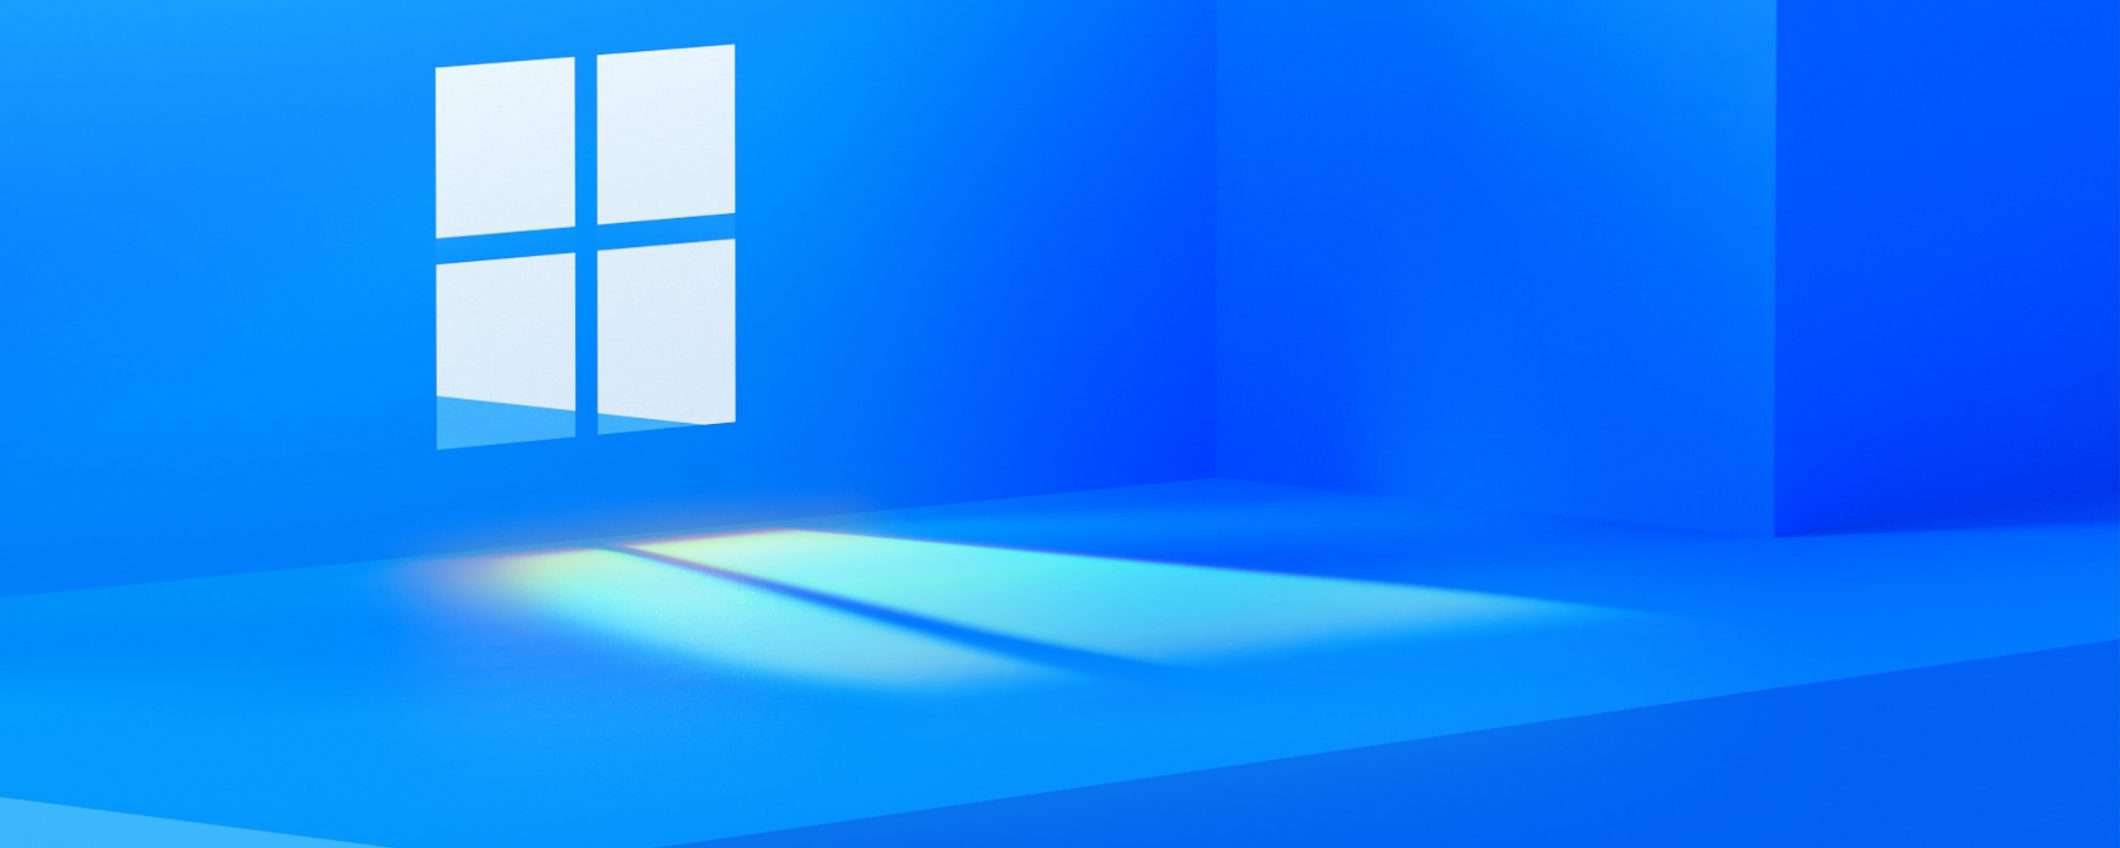 Windows 11 arriva e manda in pensione Windows 10